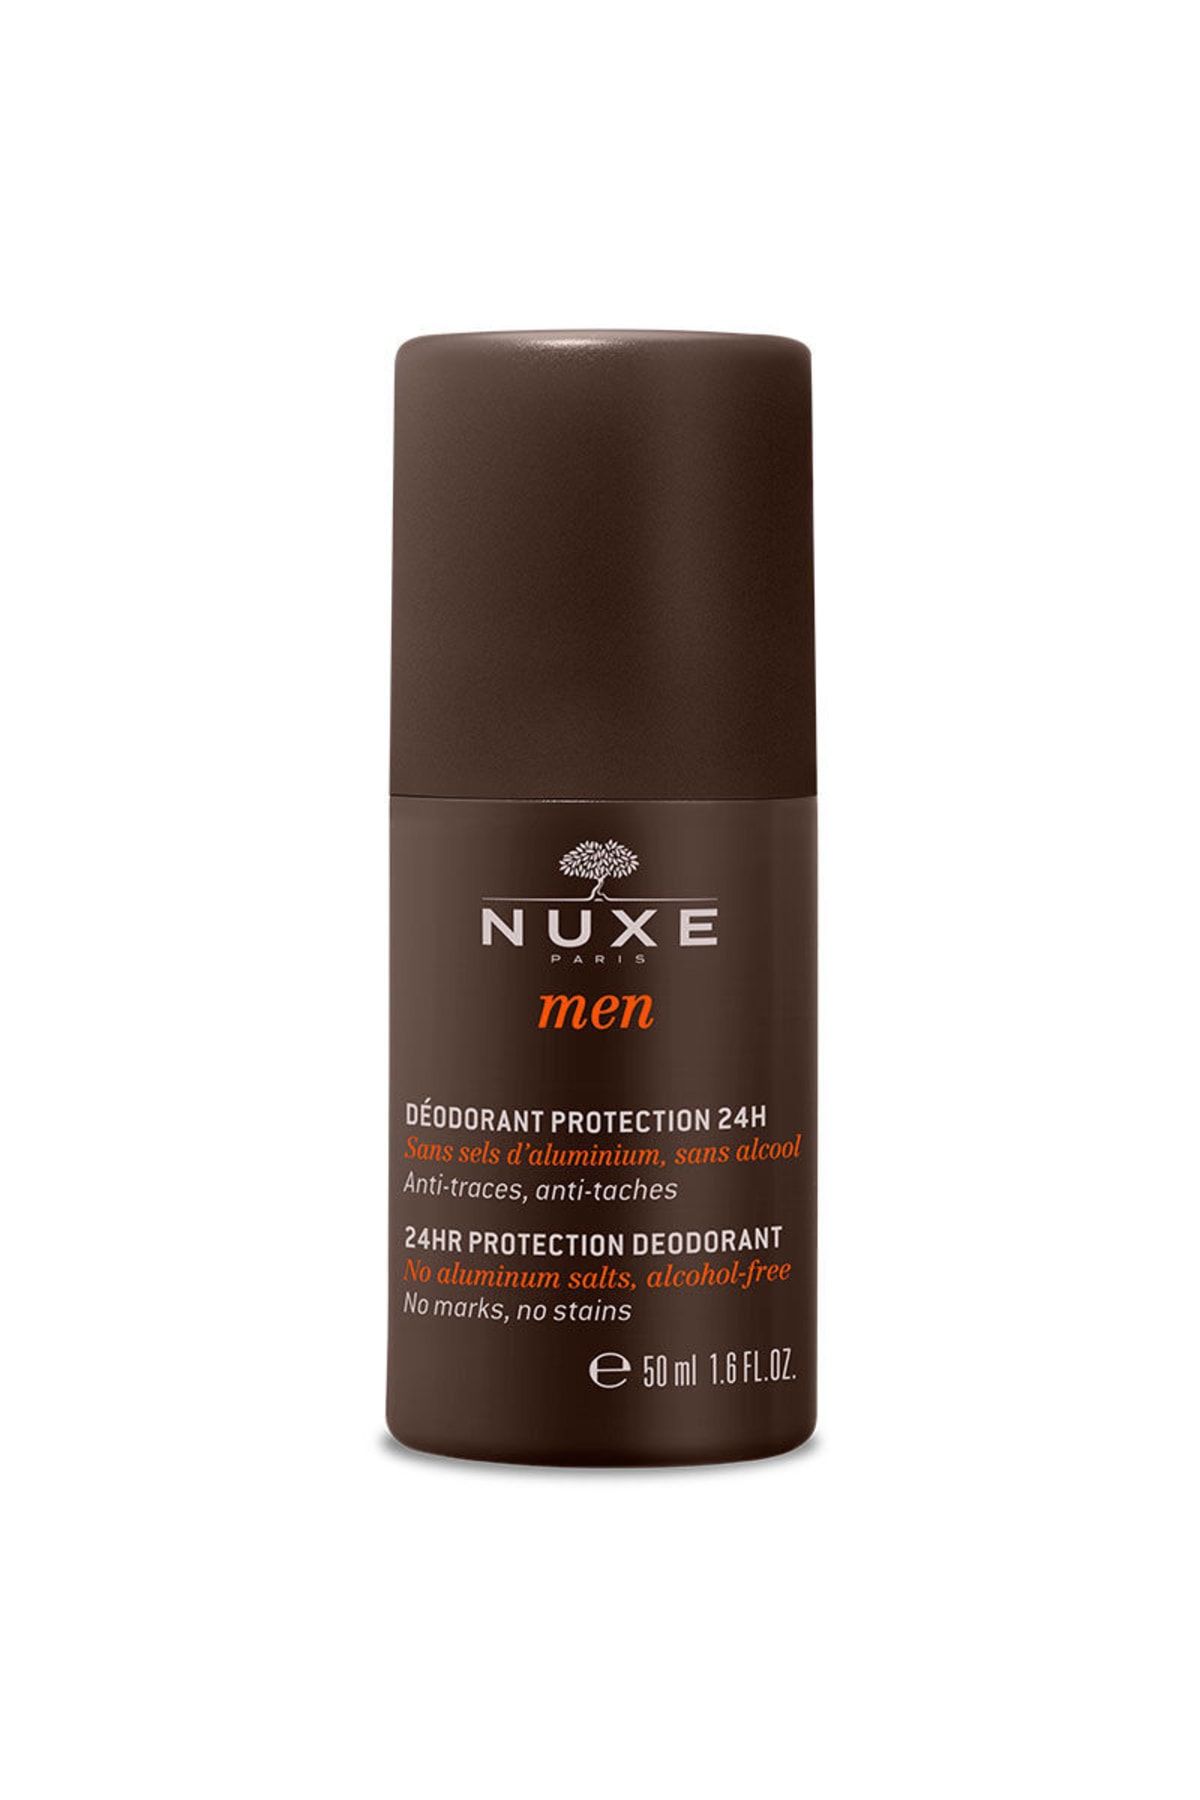 Nuxe Men Iz Bırakmayan Leke Yapmayan Terlemeye Karşı Etkili Deodorant 50ml